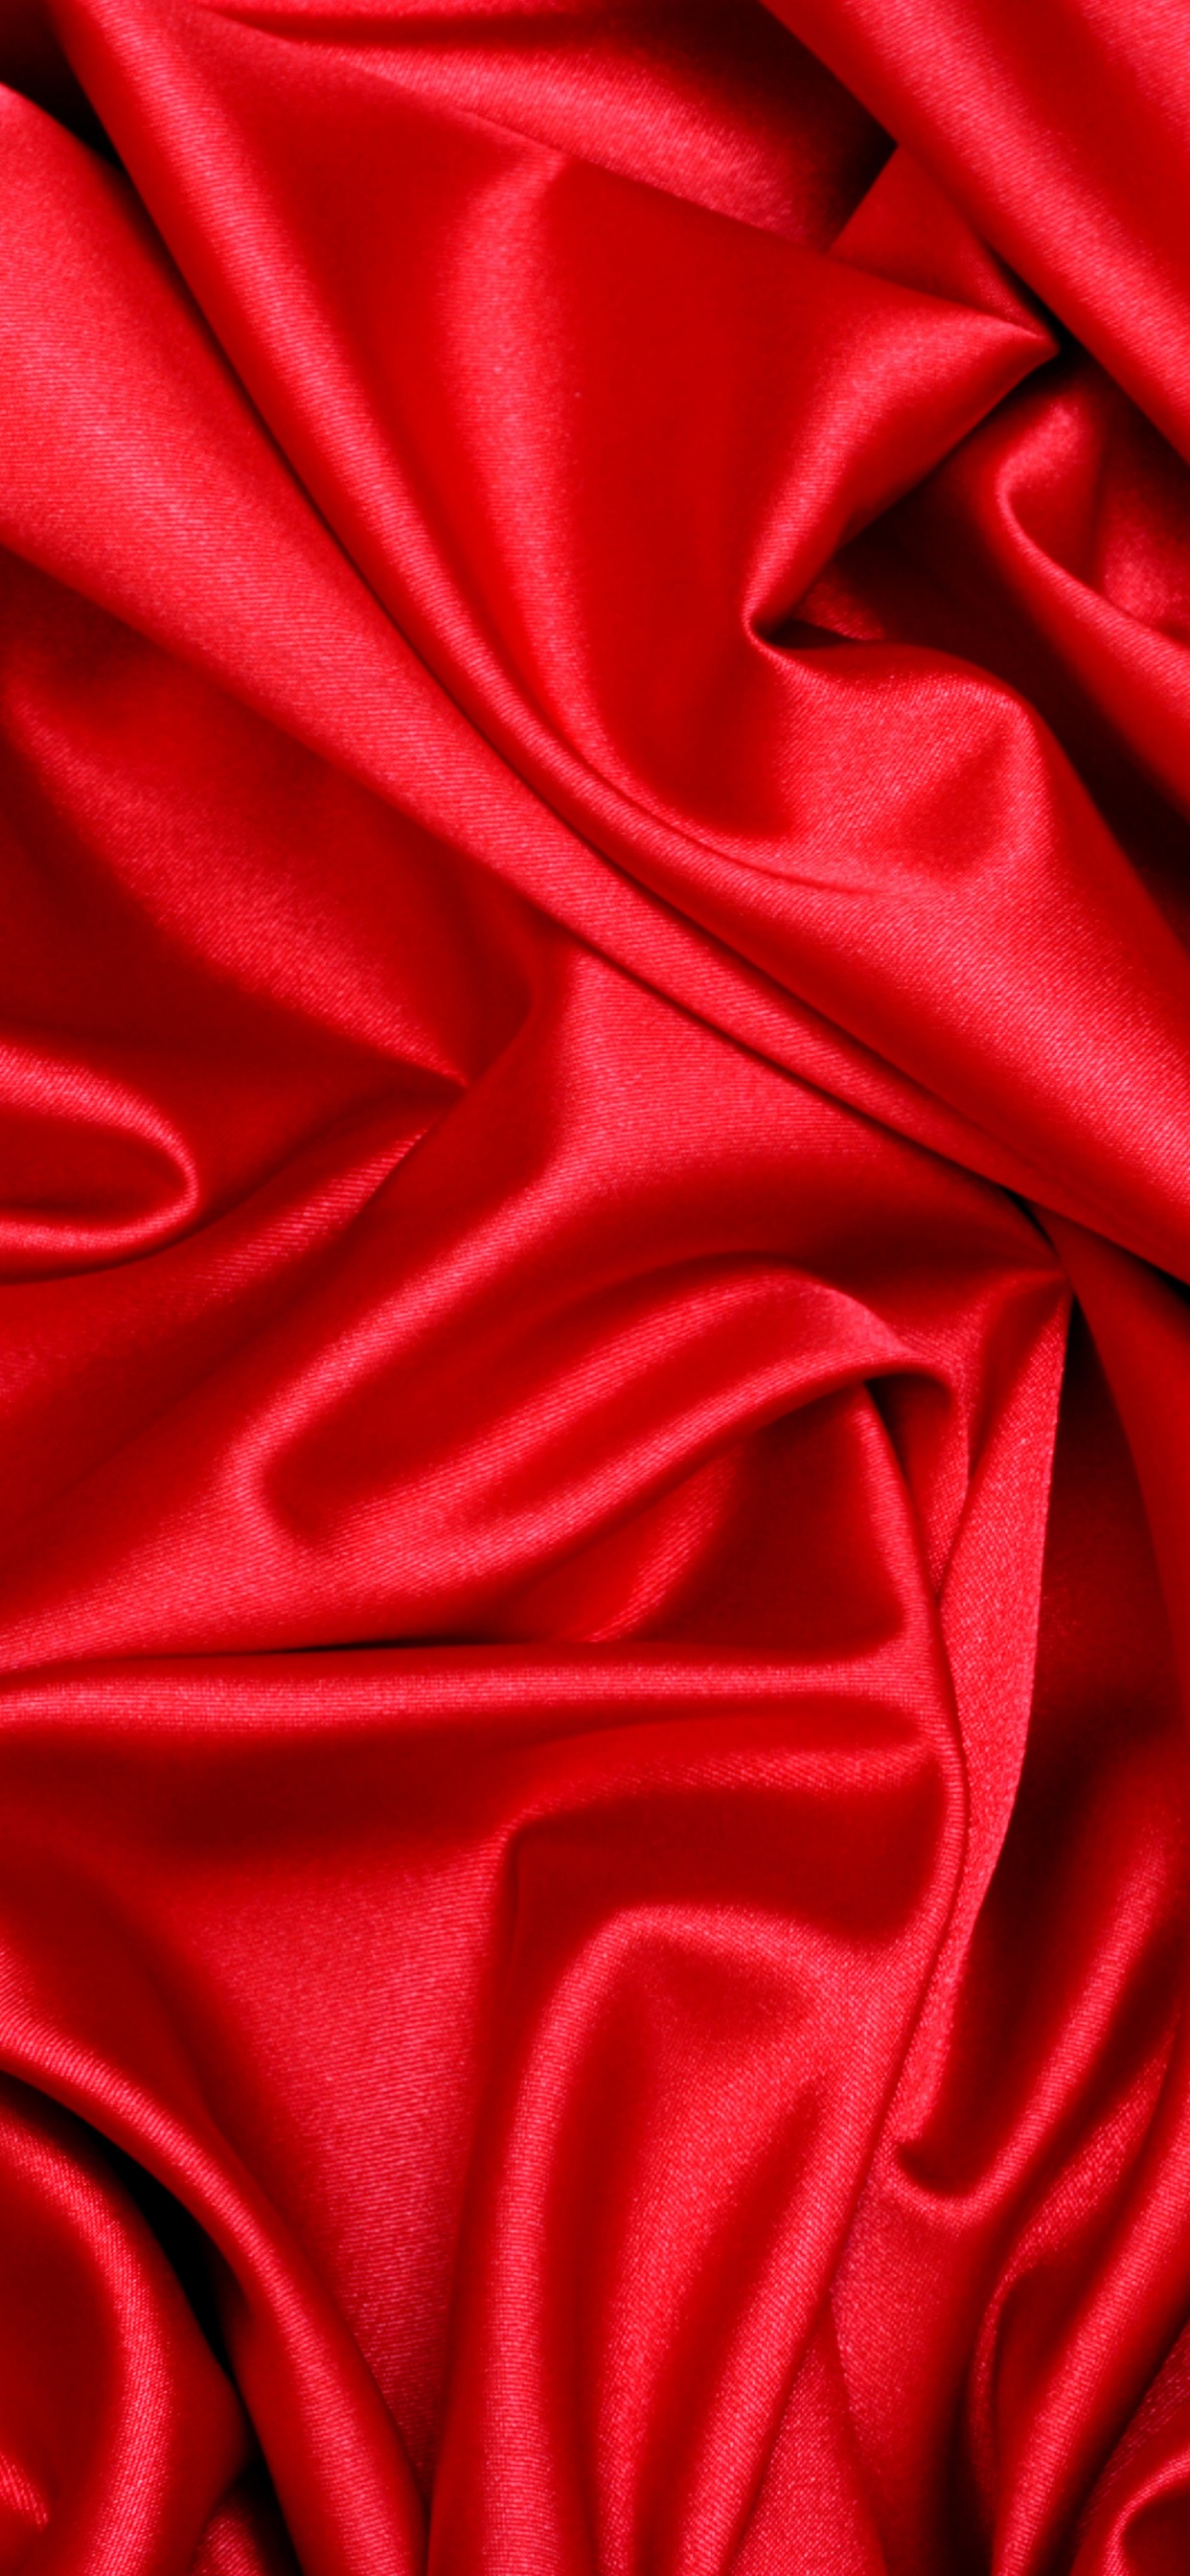 缎面, 丝绸, 红色的, 天鹅绒, 品红色 壁纸 1242x2688 允许